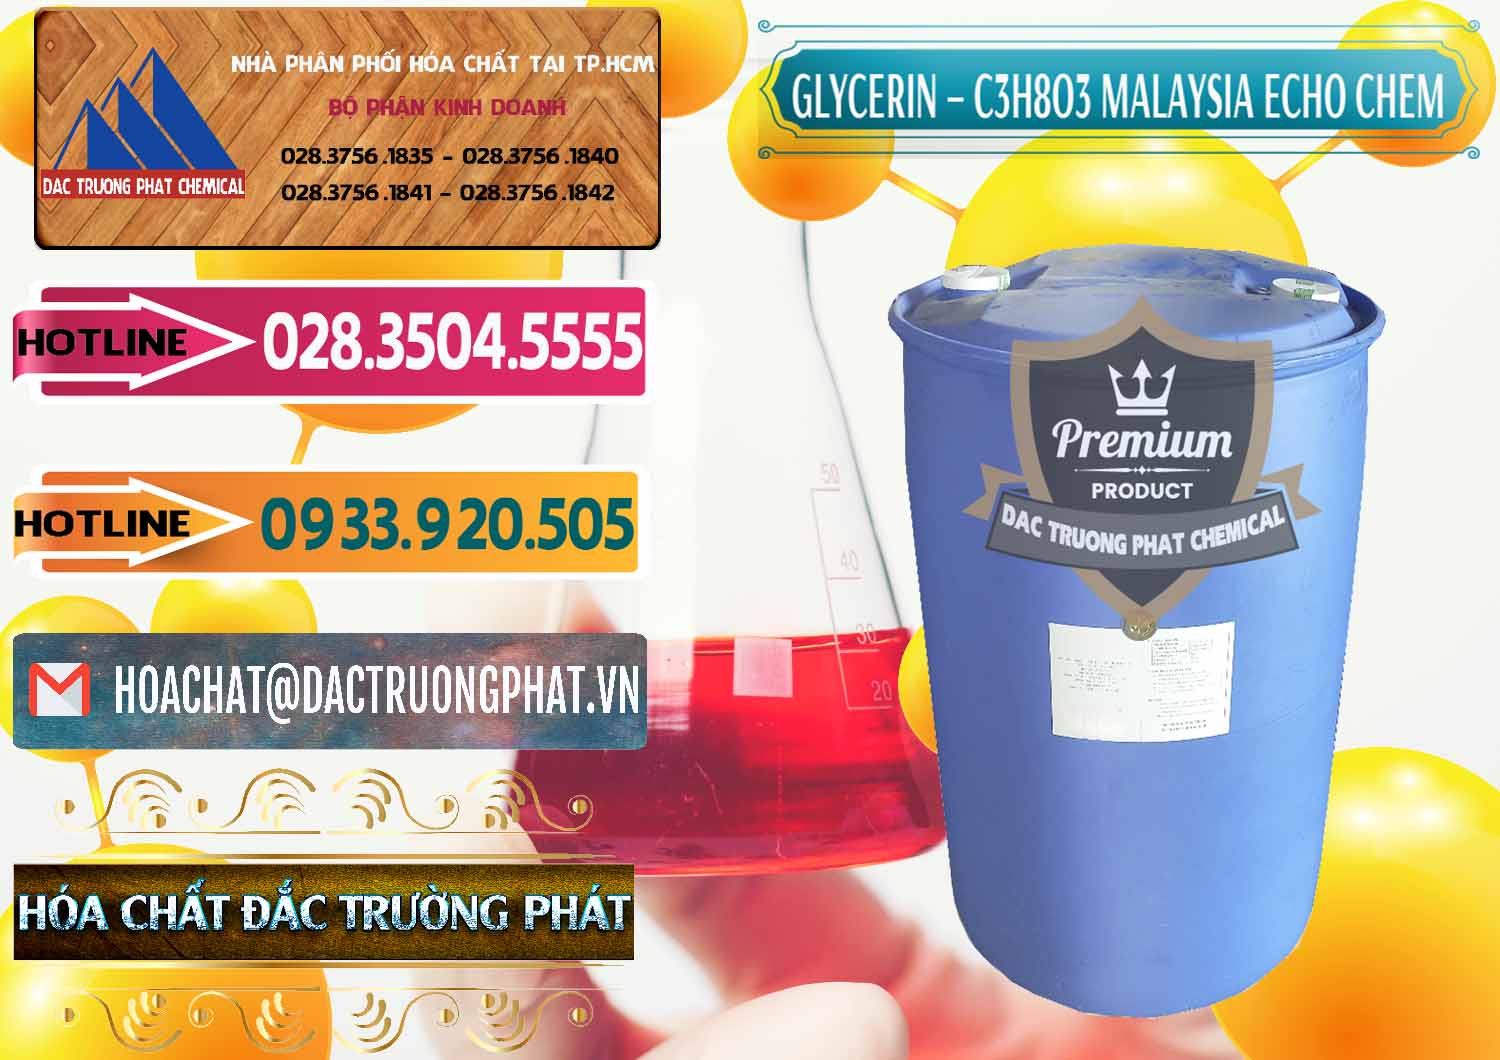 Cty chuyên bán và cung ứng Glycerin – C3H8O3 99.7% Echo Chem Malaysia - 0273 - Cty bán và phân phối hóa chất tại TP.HCM - dactruongphat.vn